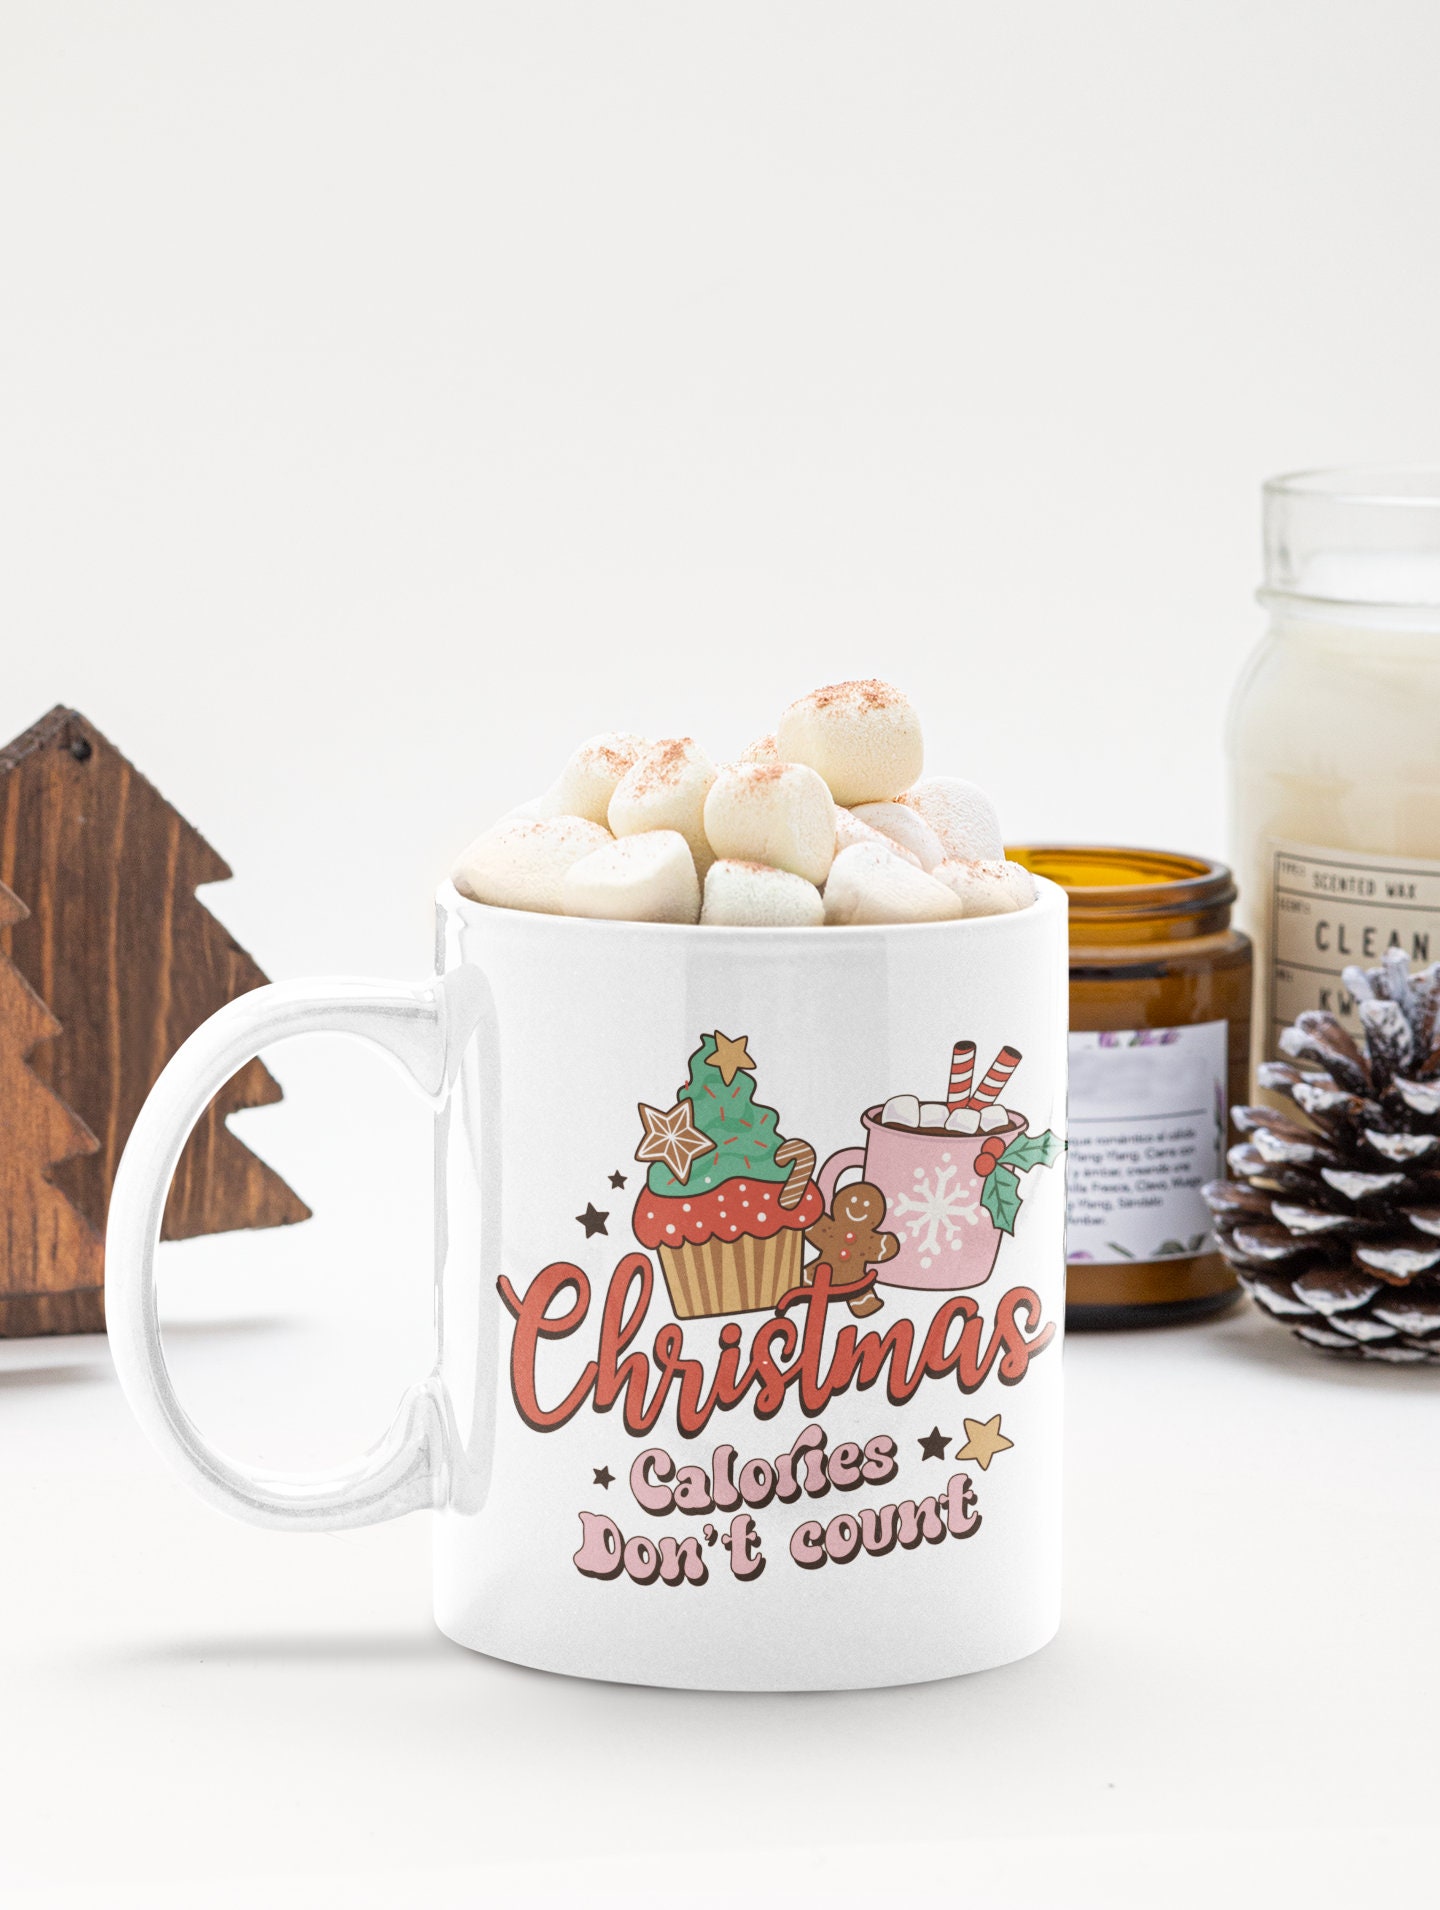 Discover Holiday Coffee Mug, Christmas Mug, Merry Christmas Mug